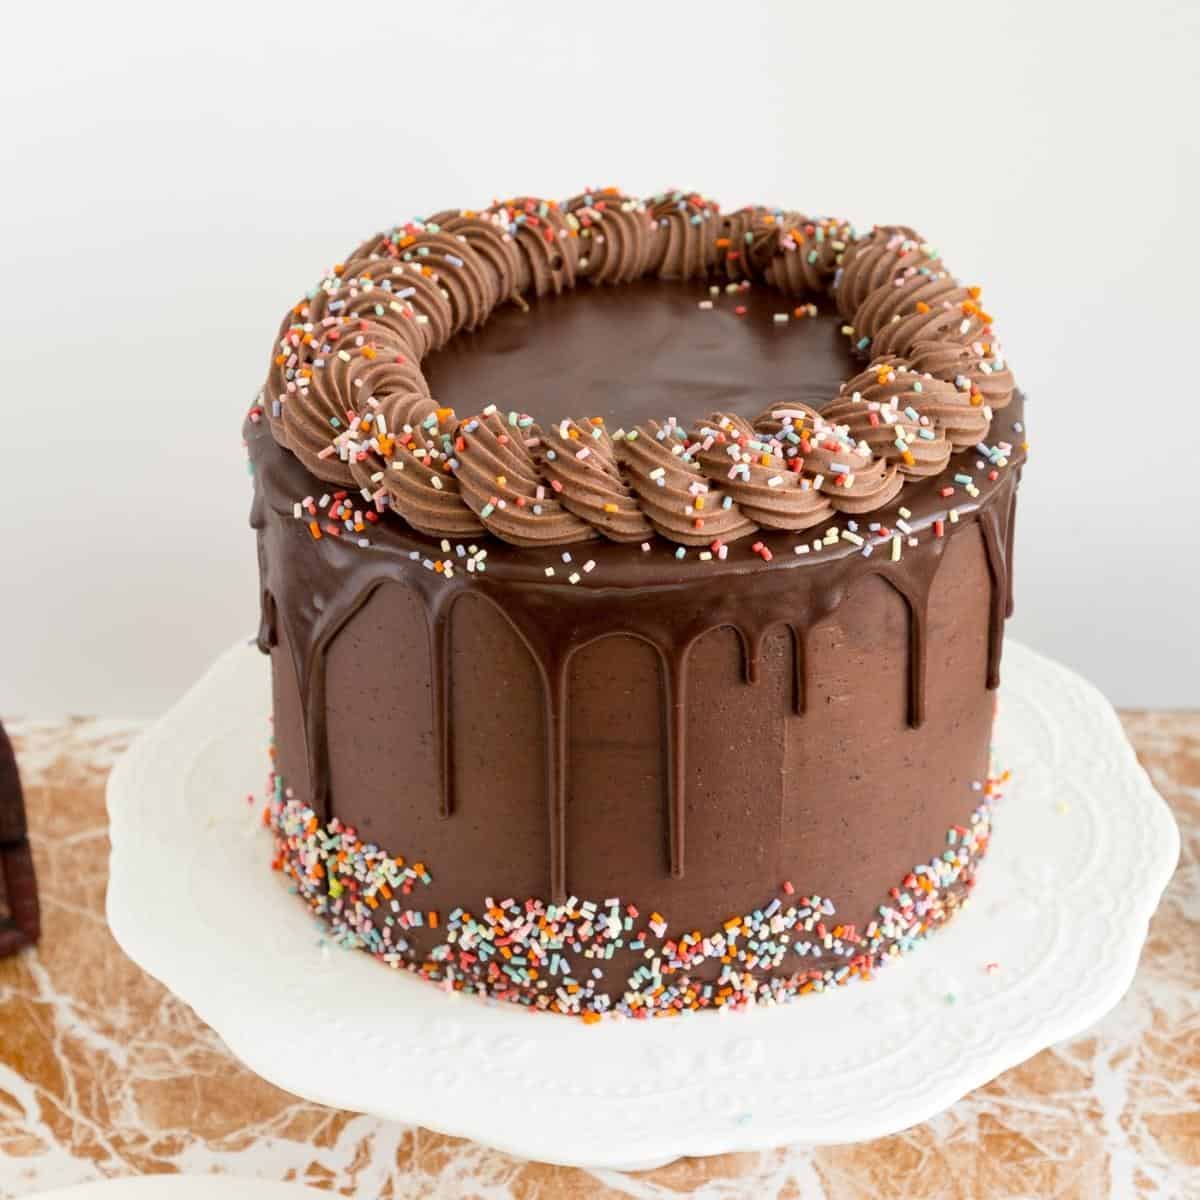 Chocolate birthday cake ideas